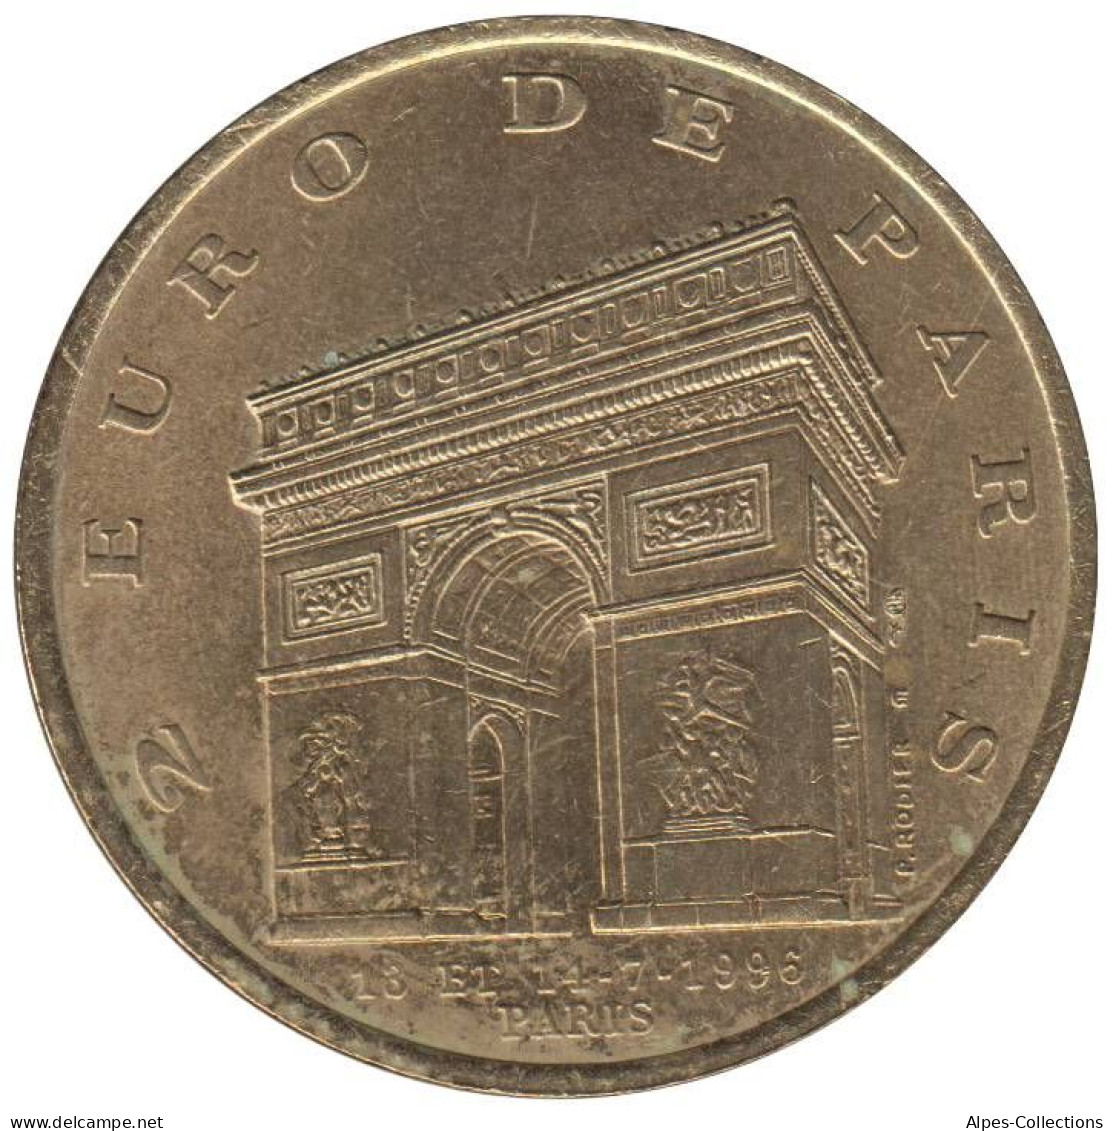 PARIS - EU0020.4 - 2 EURO DES VILLES - Réf: T194 - 1996 - Euro Delle Città